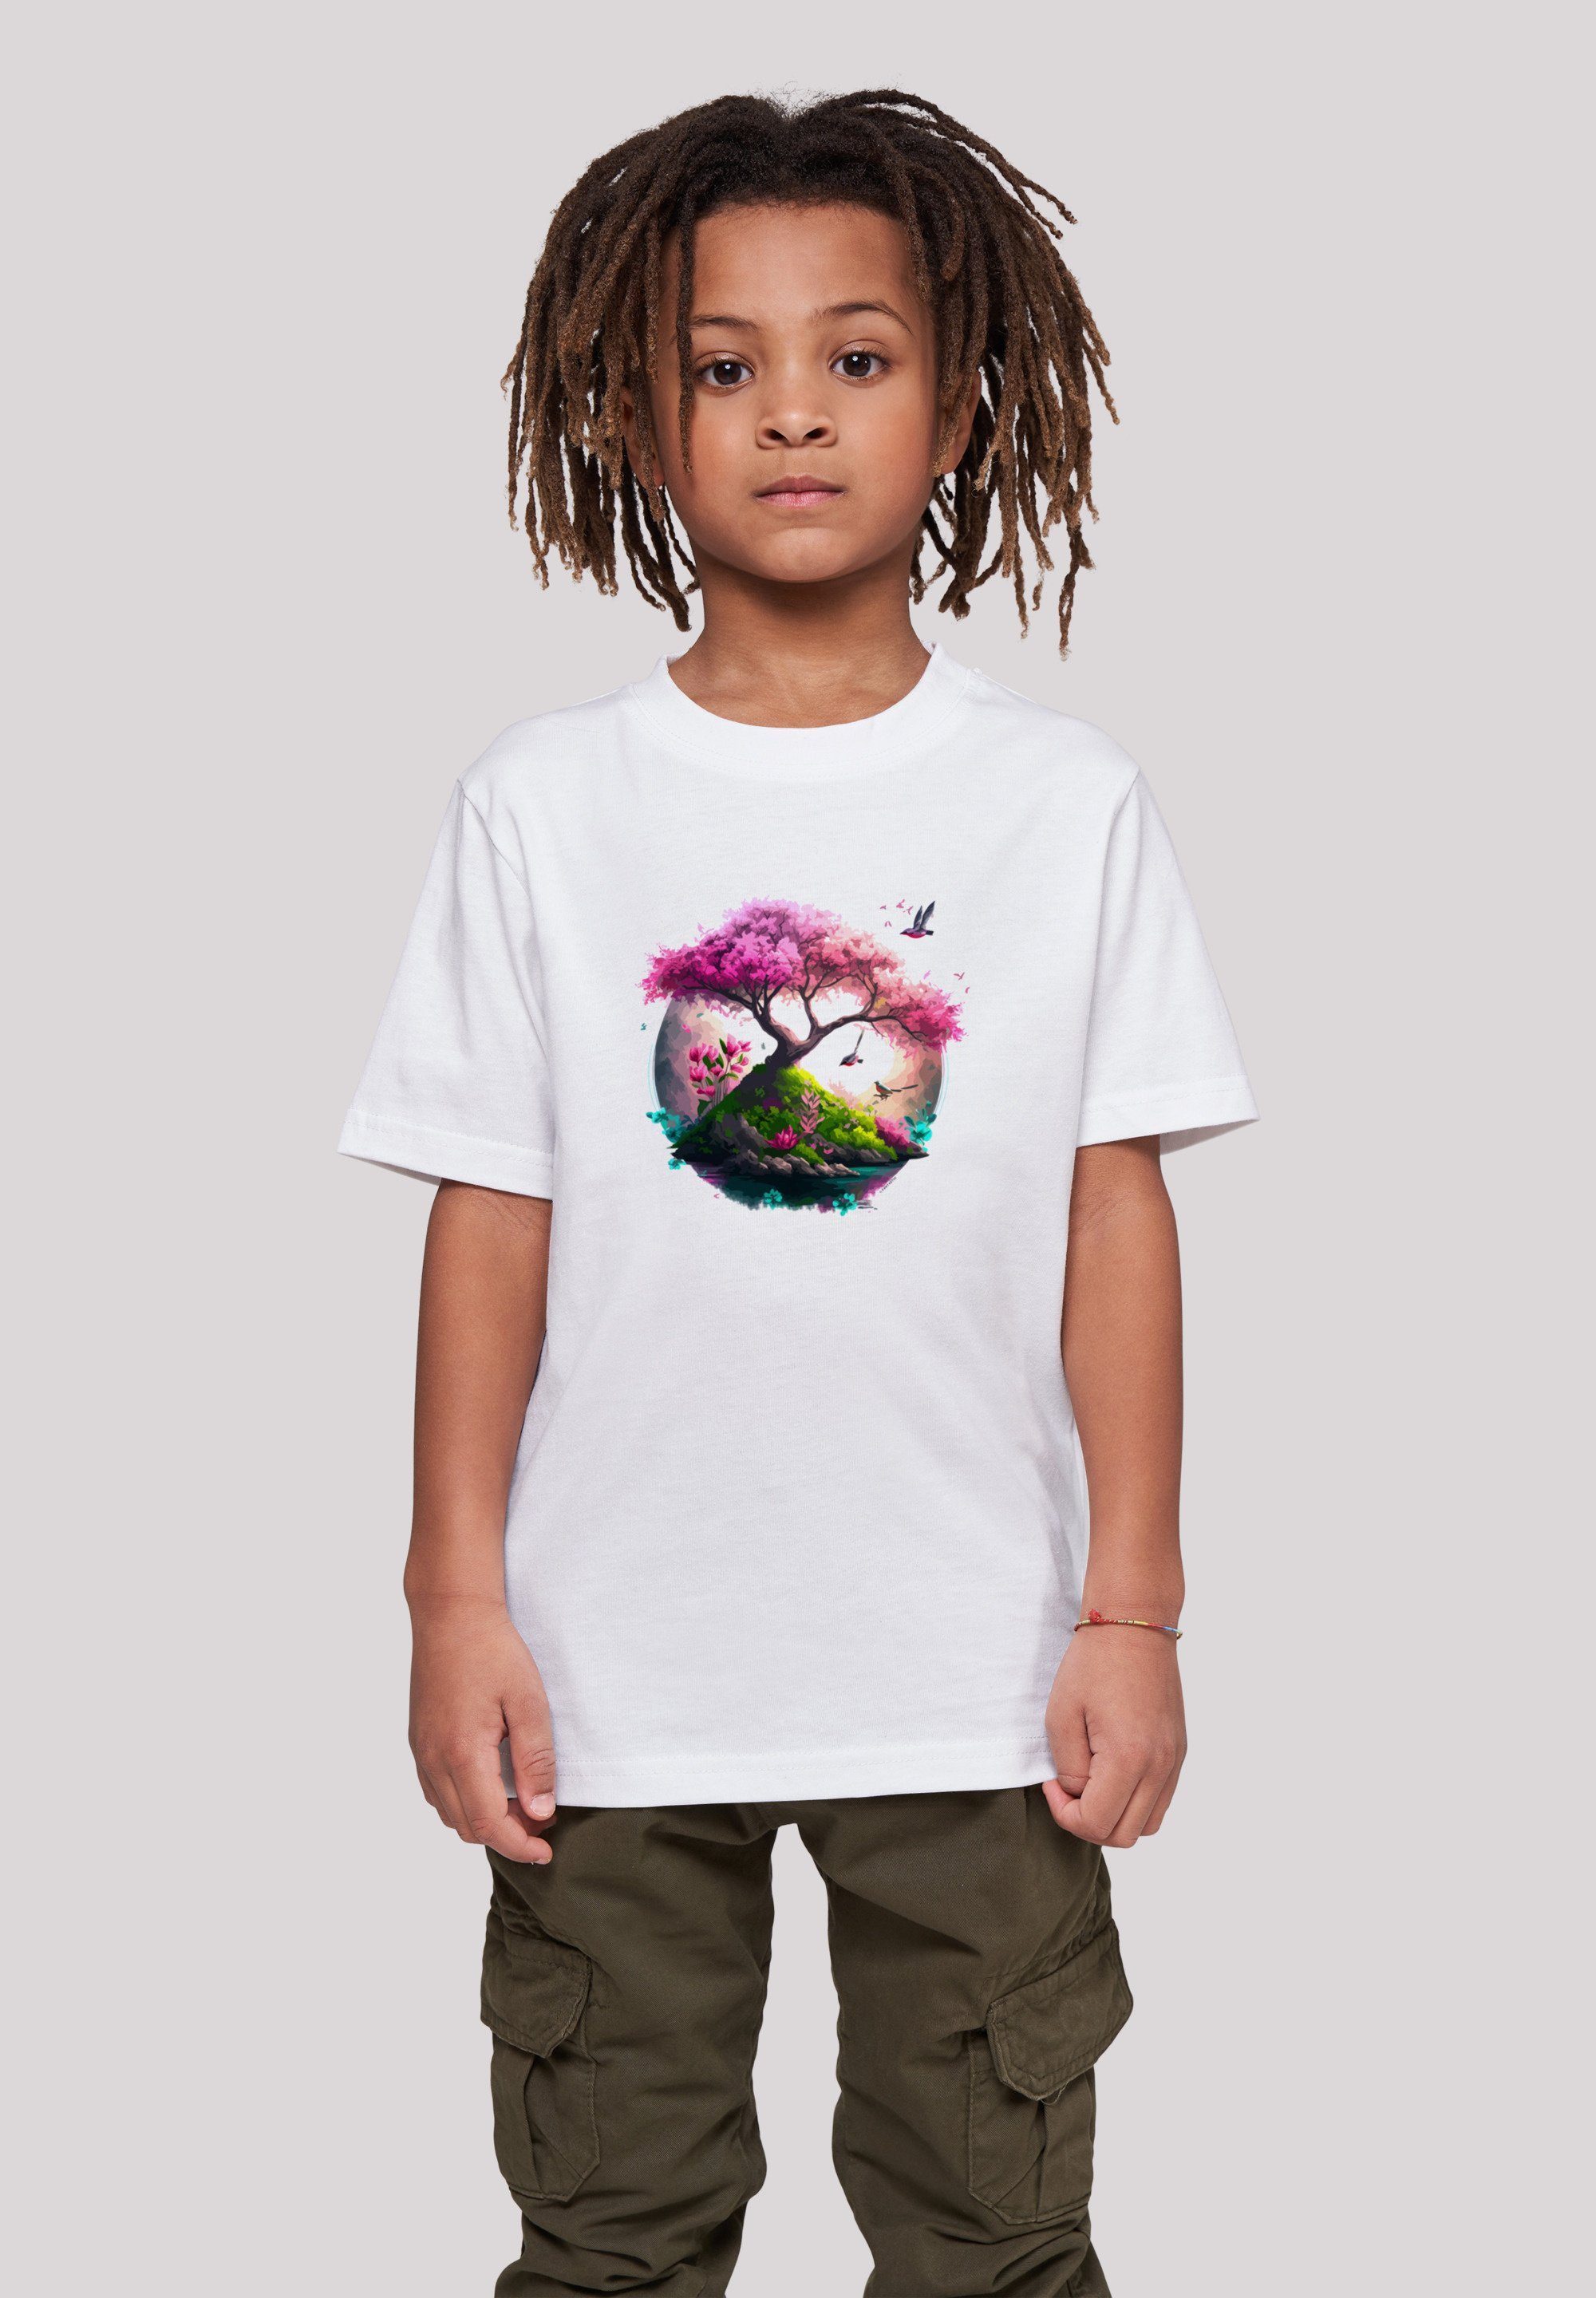 T-Shirt Tee weiß Baum Print Unisex F4NT4STIC Kirschblüten